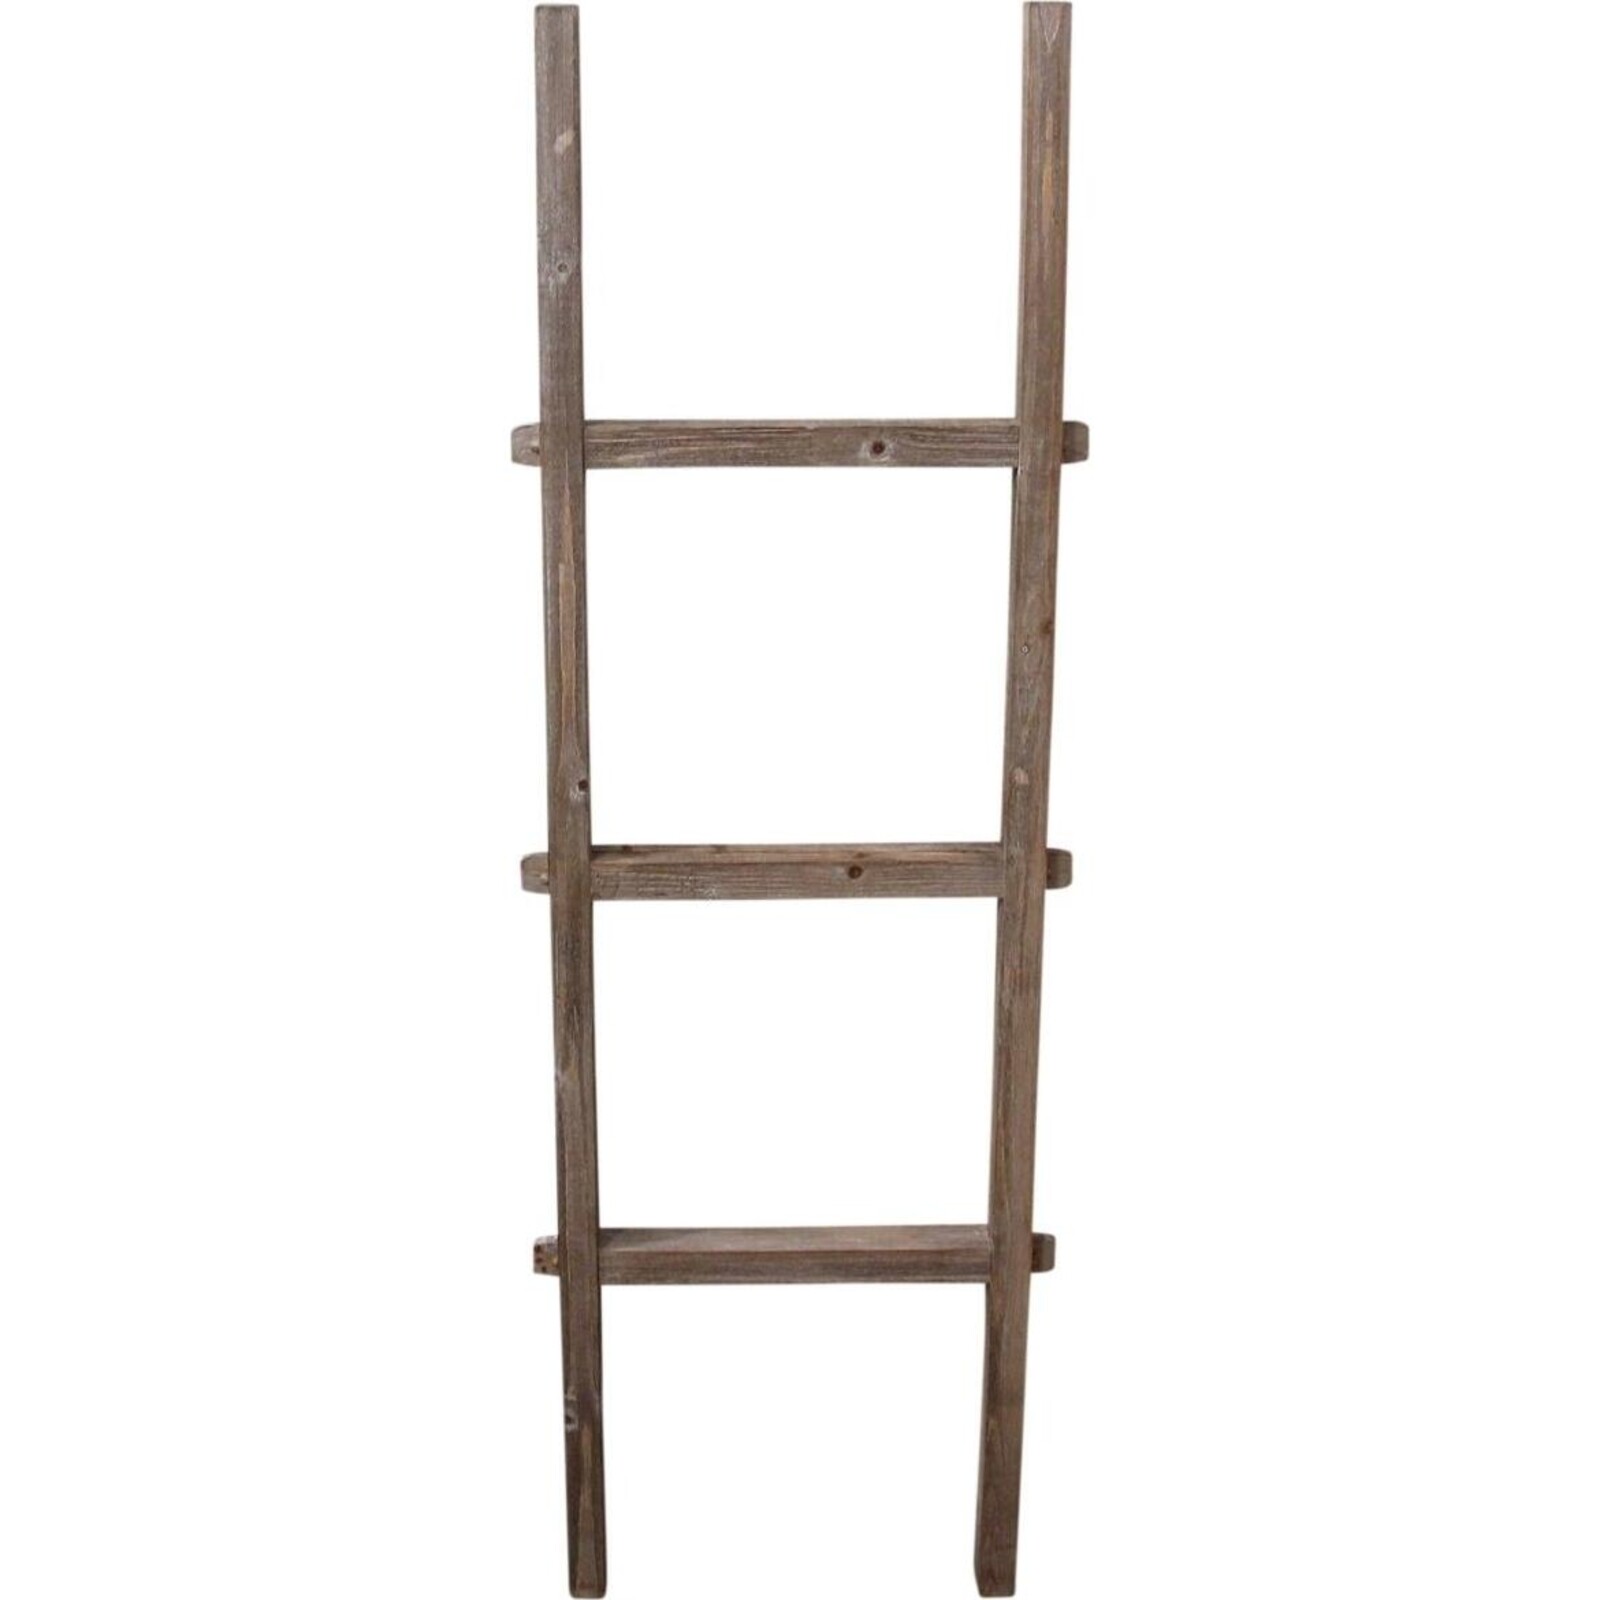 Ladder Rustic 120cm